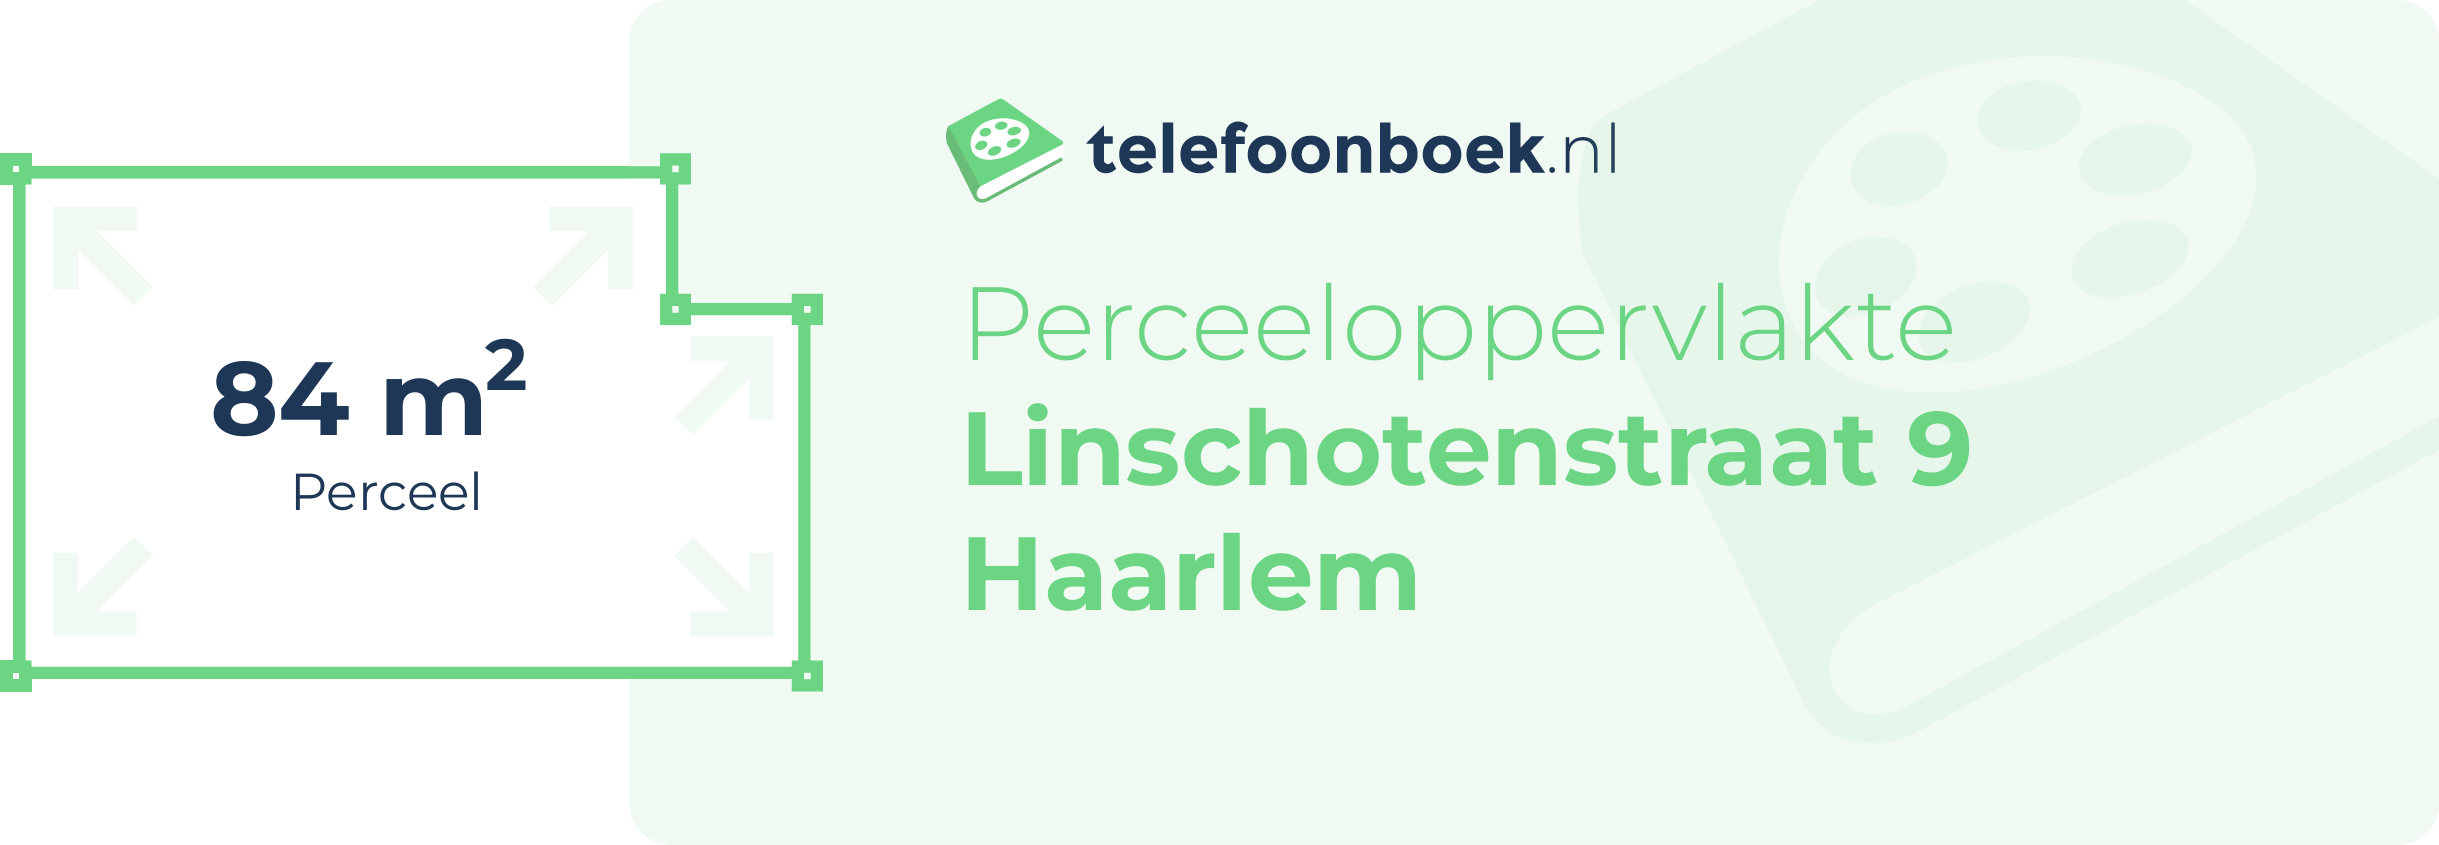 Perceeloppervlakte Linschotenstraat 9 Haarlem